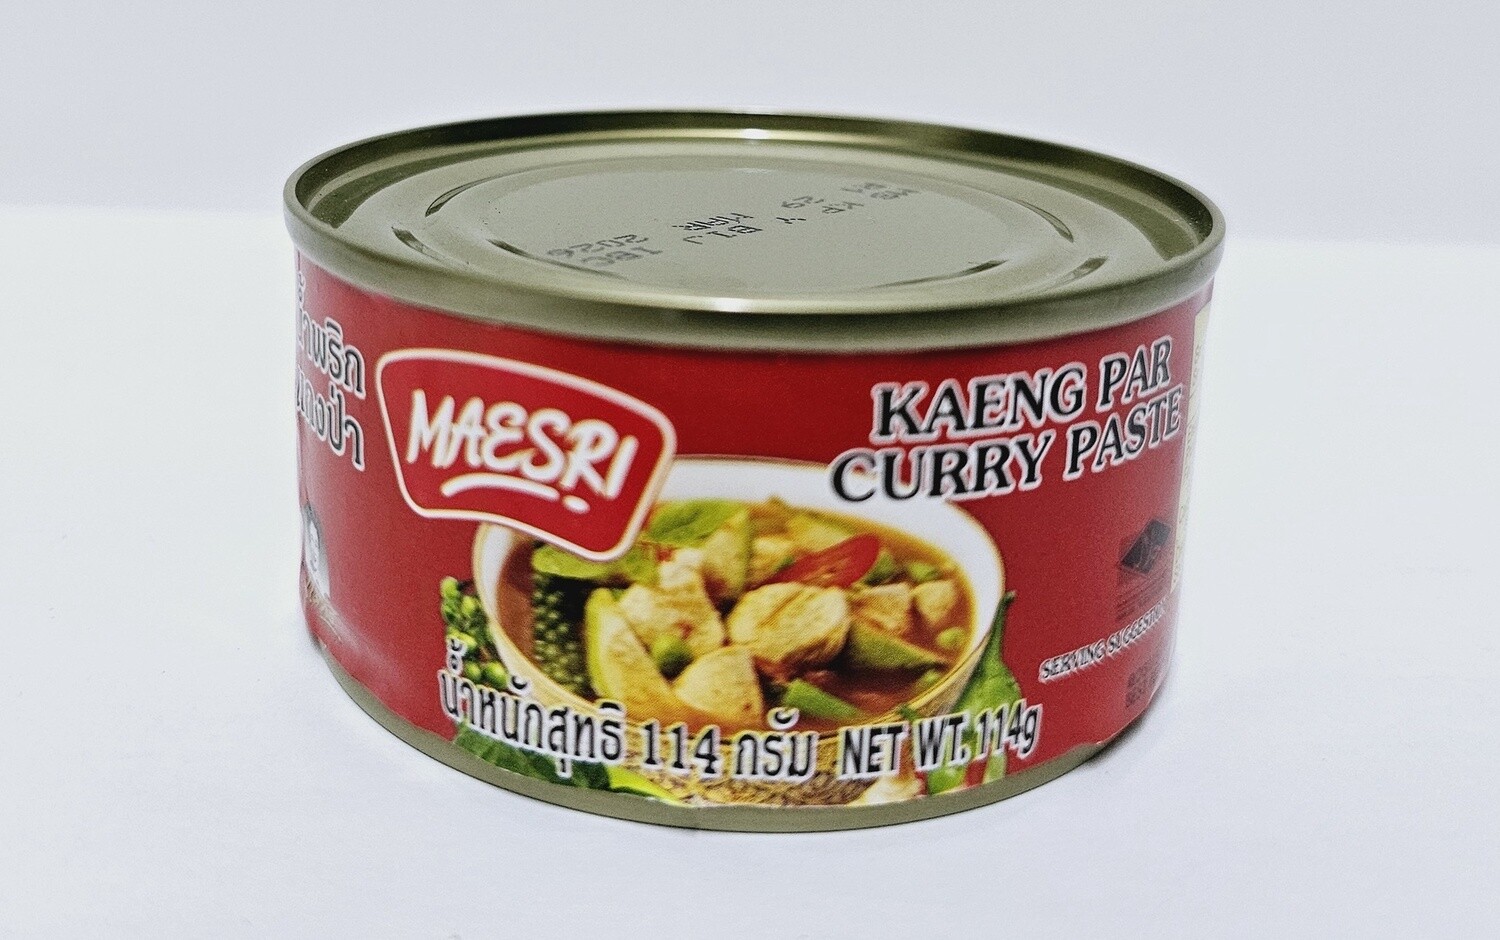 Kaeng Par Curry Paste 114g MAESRI